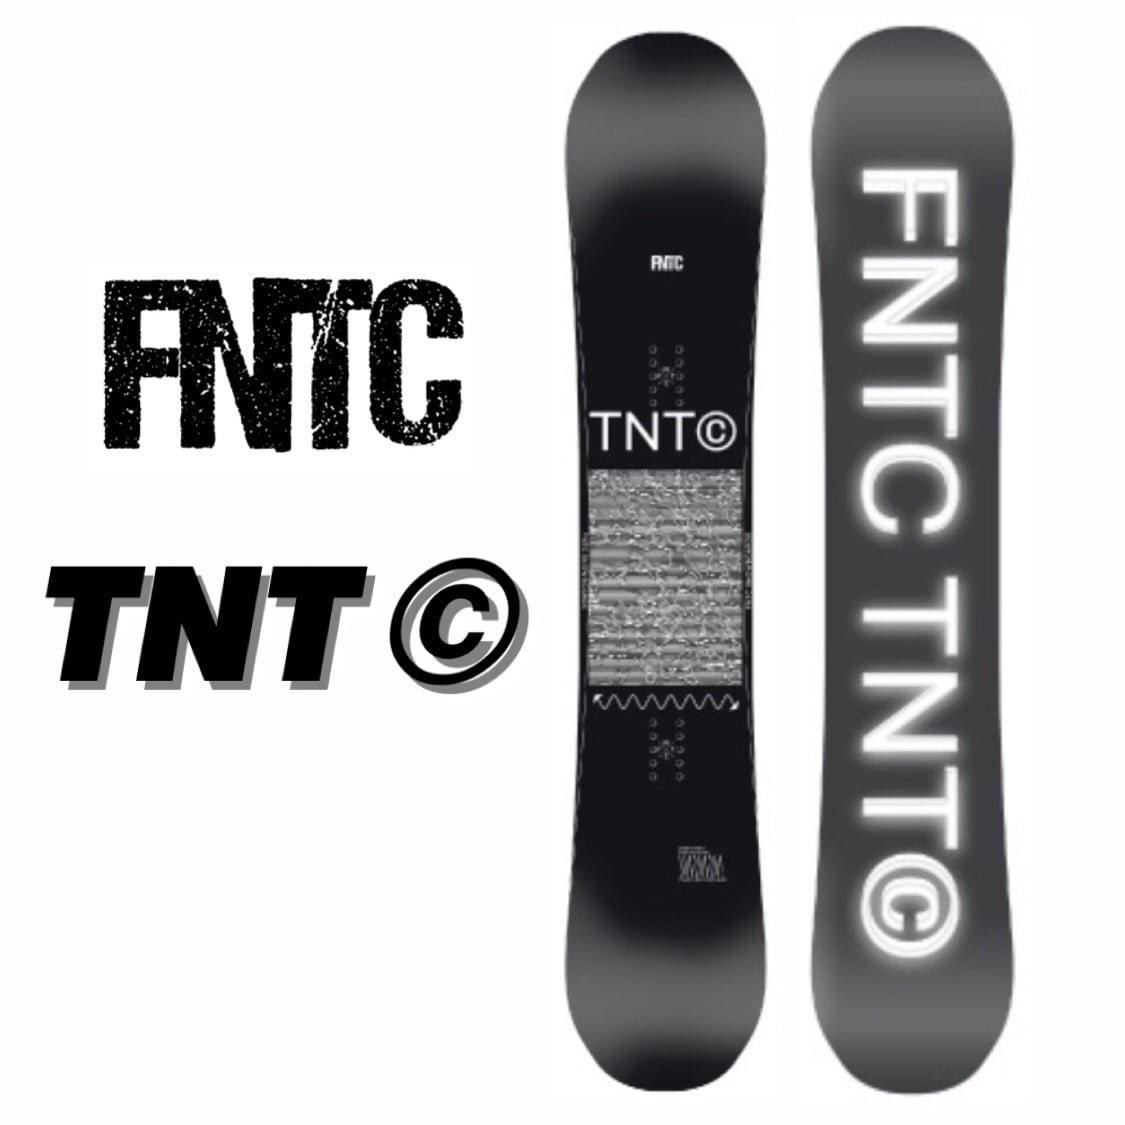 スノーボード FNTC TNT-C 147cm 22-23 グラトリ キャンバー-